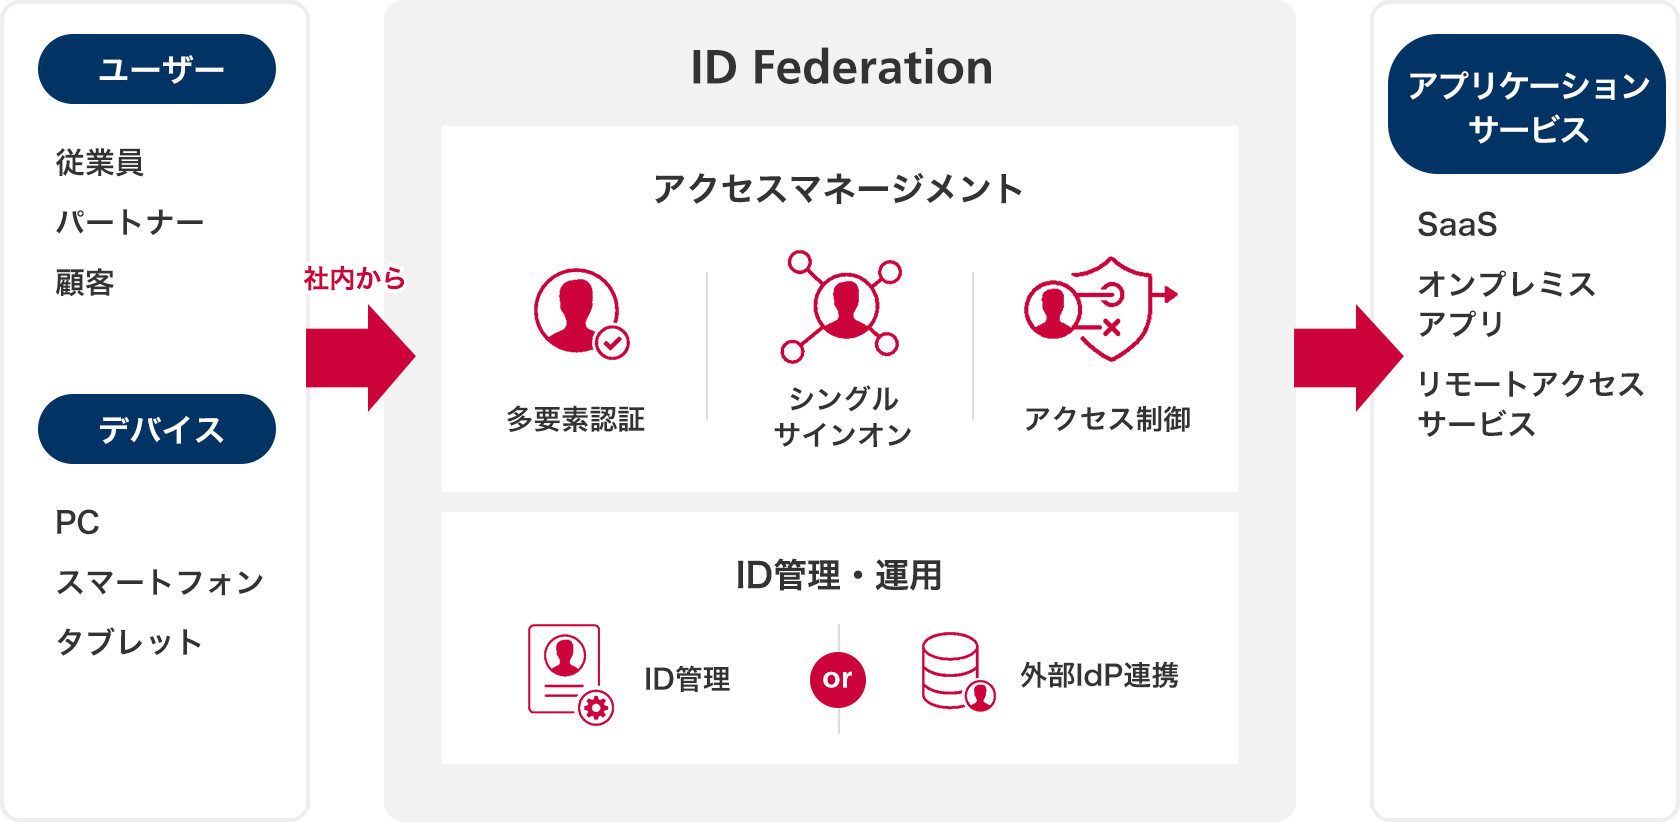 ID Federation